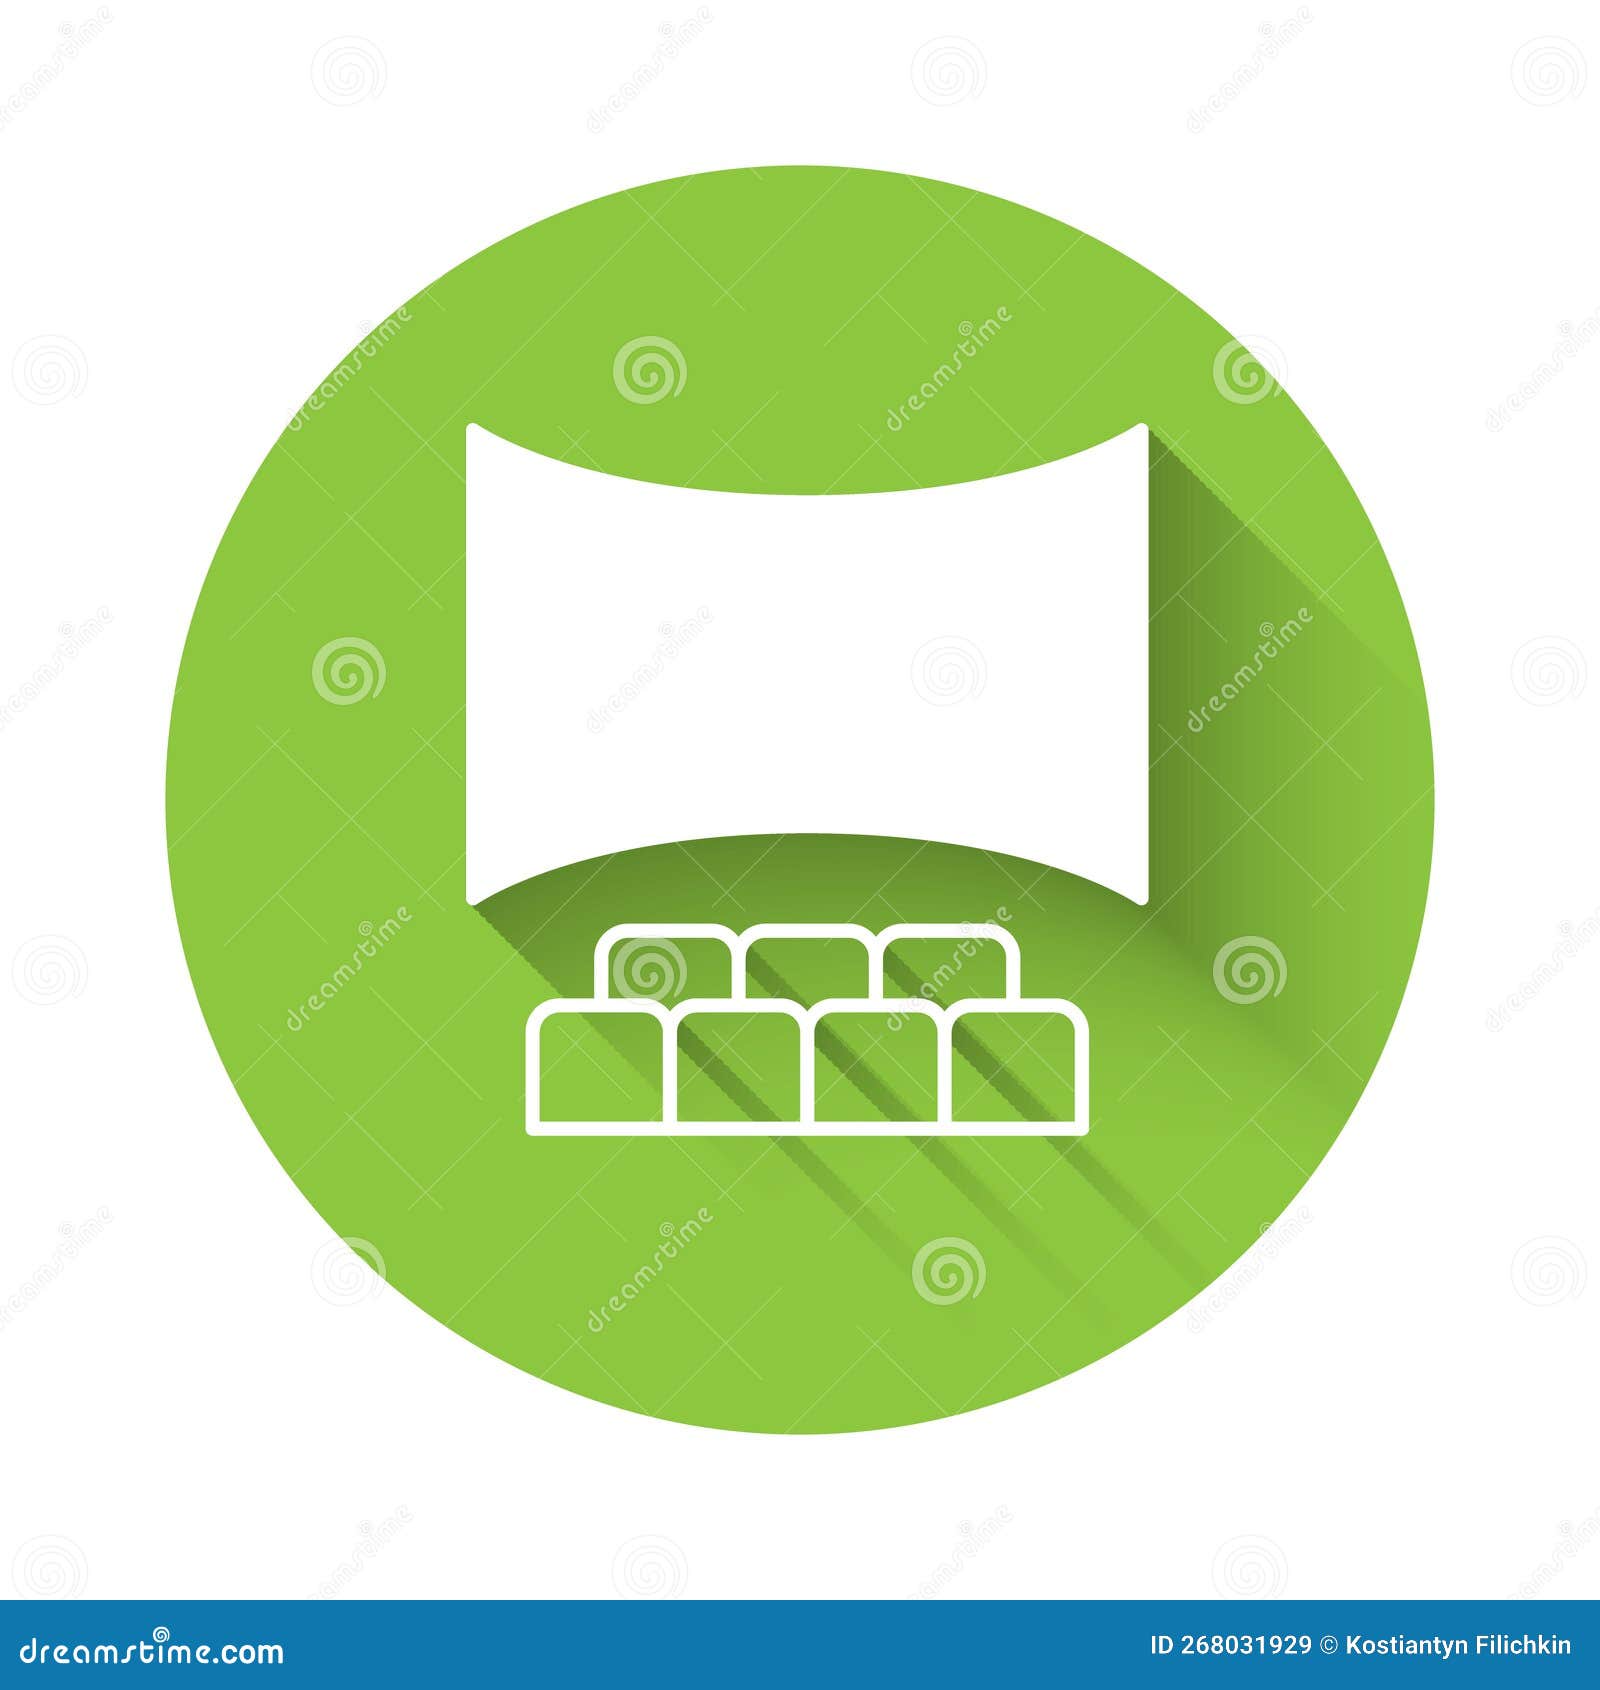 Ícones de botões de círculo verde para site ou jogo